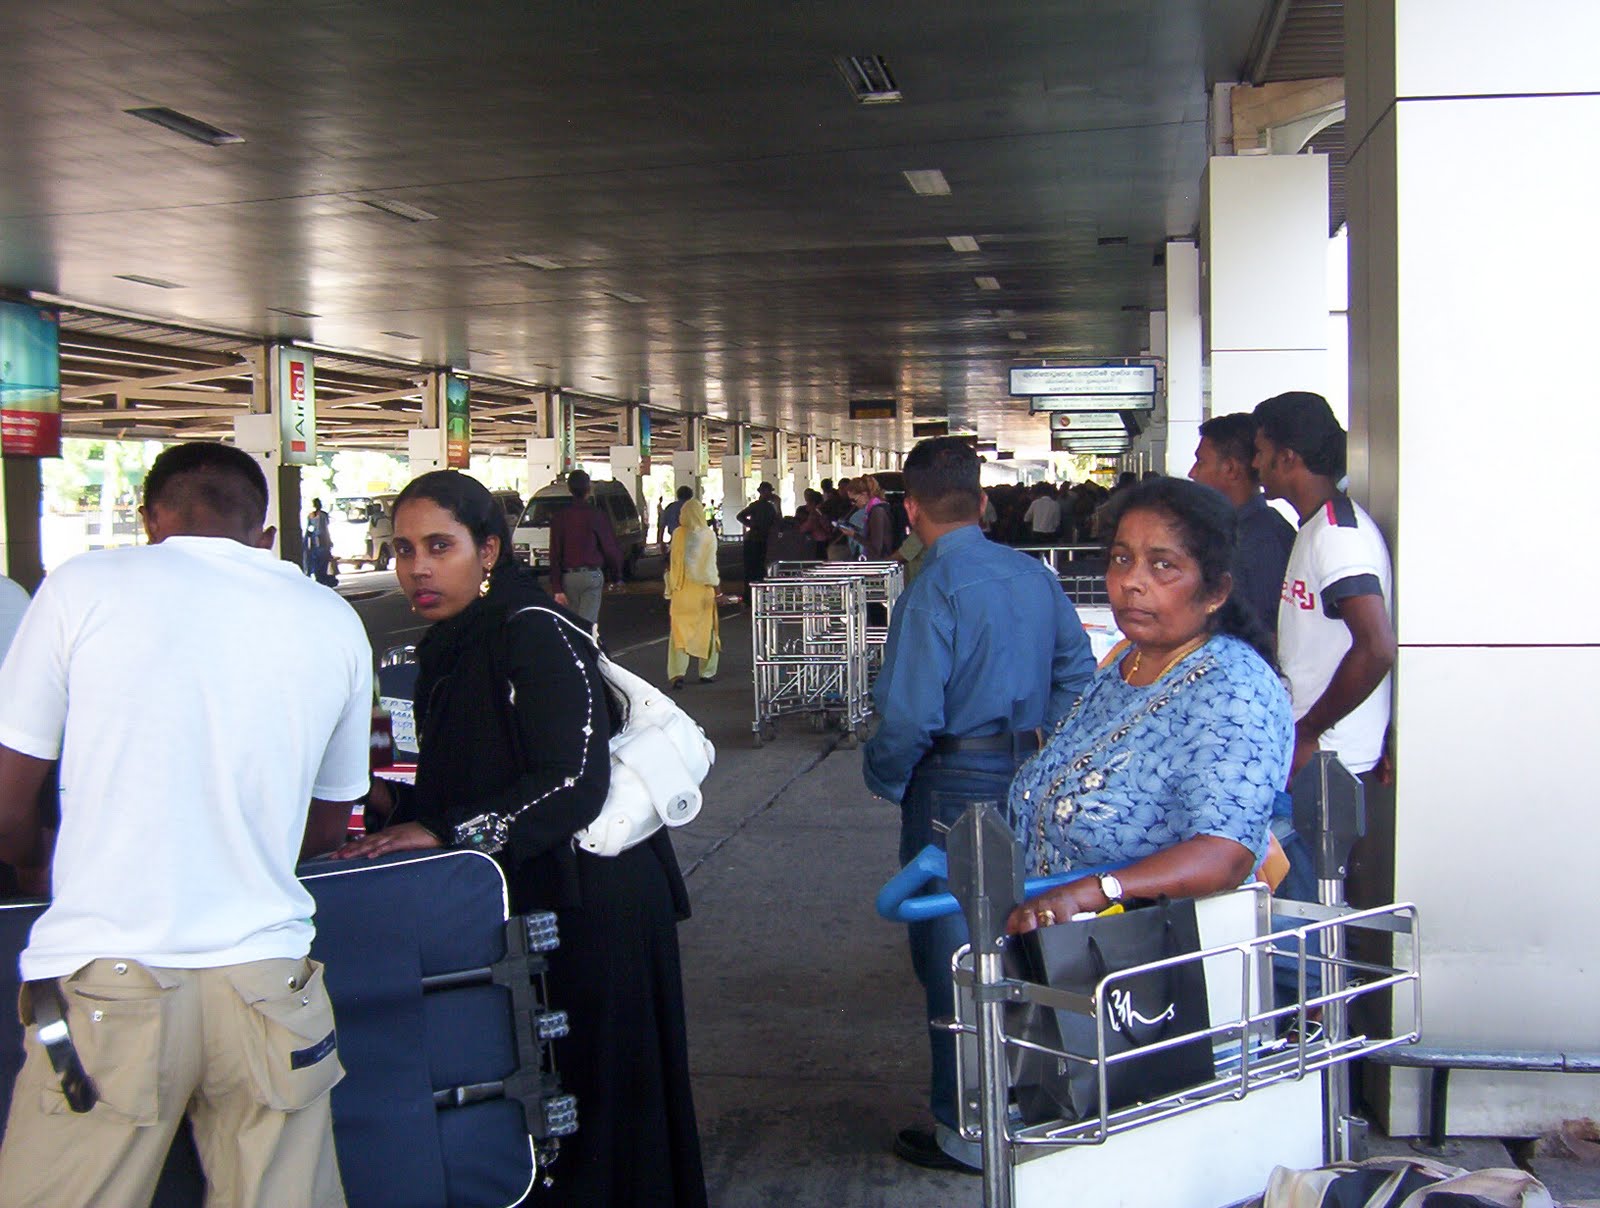 Аэропорт коломбо шри табло. Аэропорт на Шри Ланке Коломбо. Международный аэропорт Коломбо. Аэропорт Коломбо Шри Ланка. Коломбо аэропорт встречающие компанией фото.